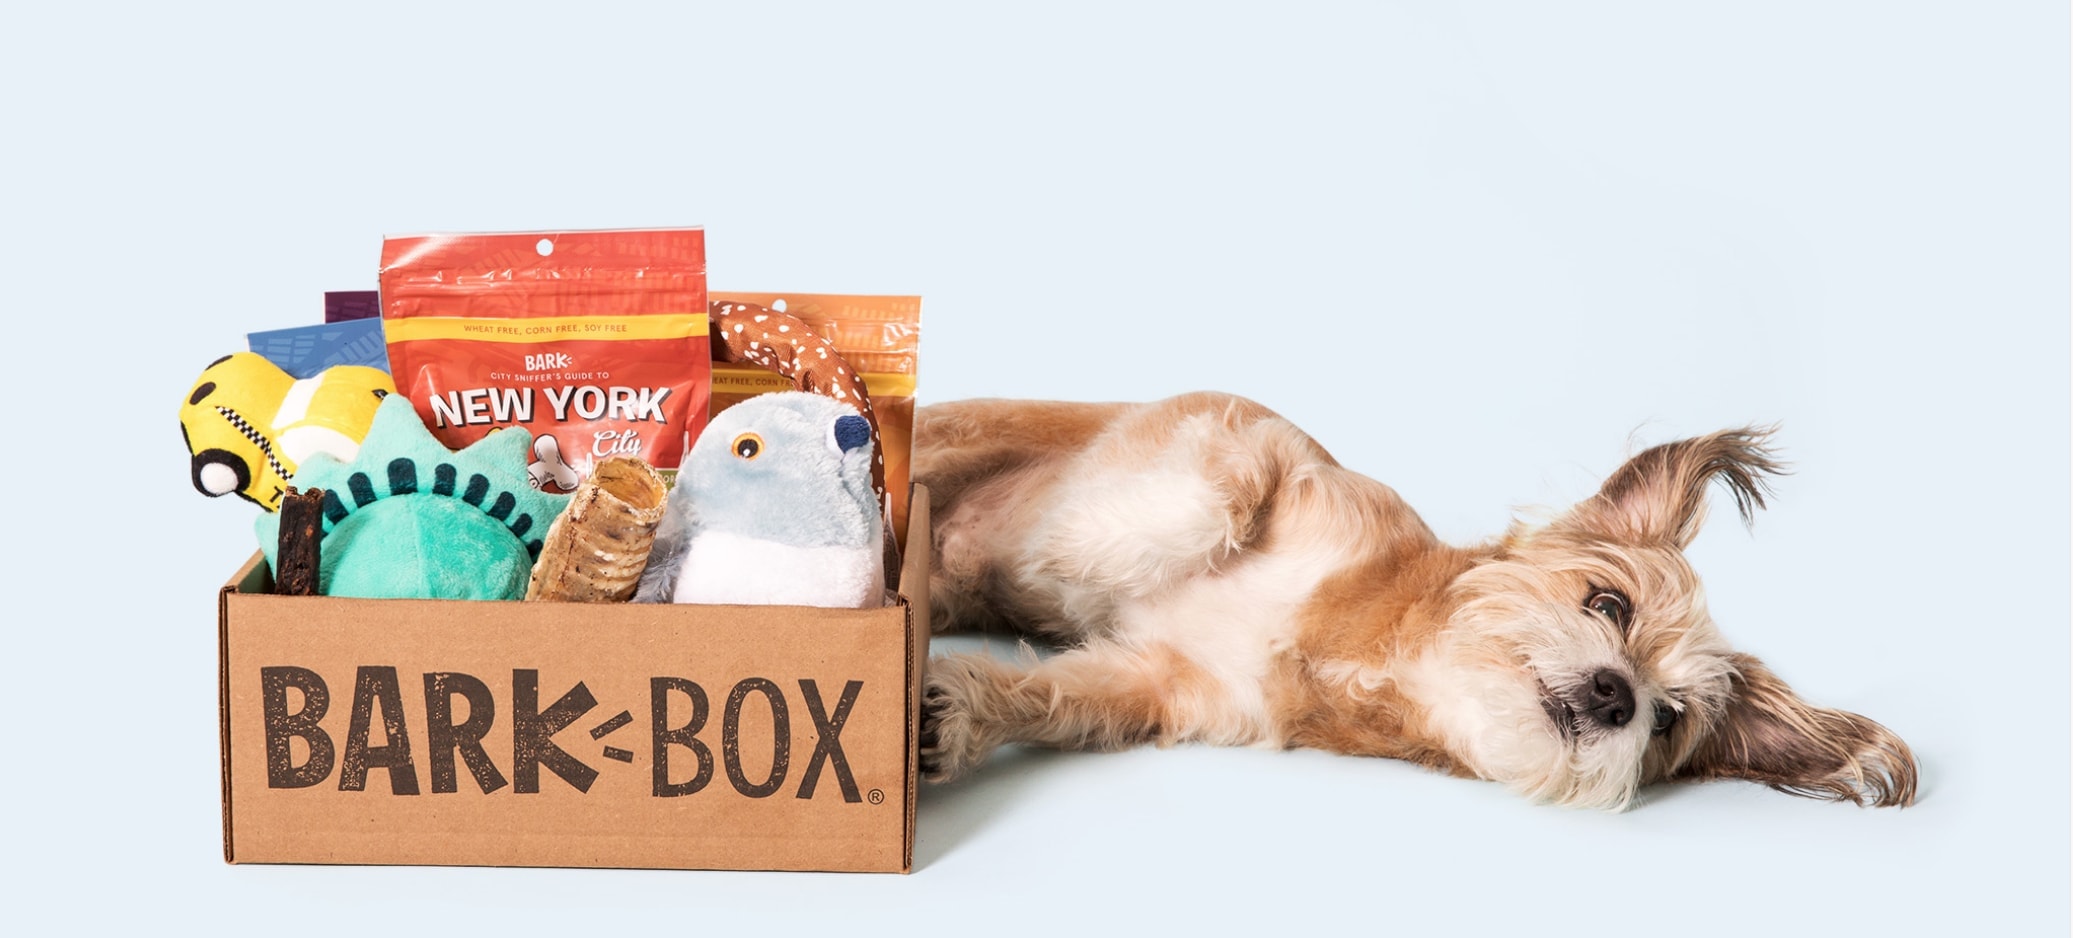 bark box subscription box for dogs Dog Toys Advisor